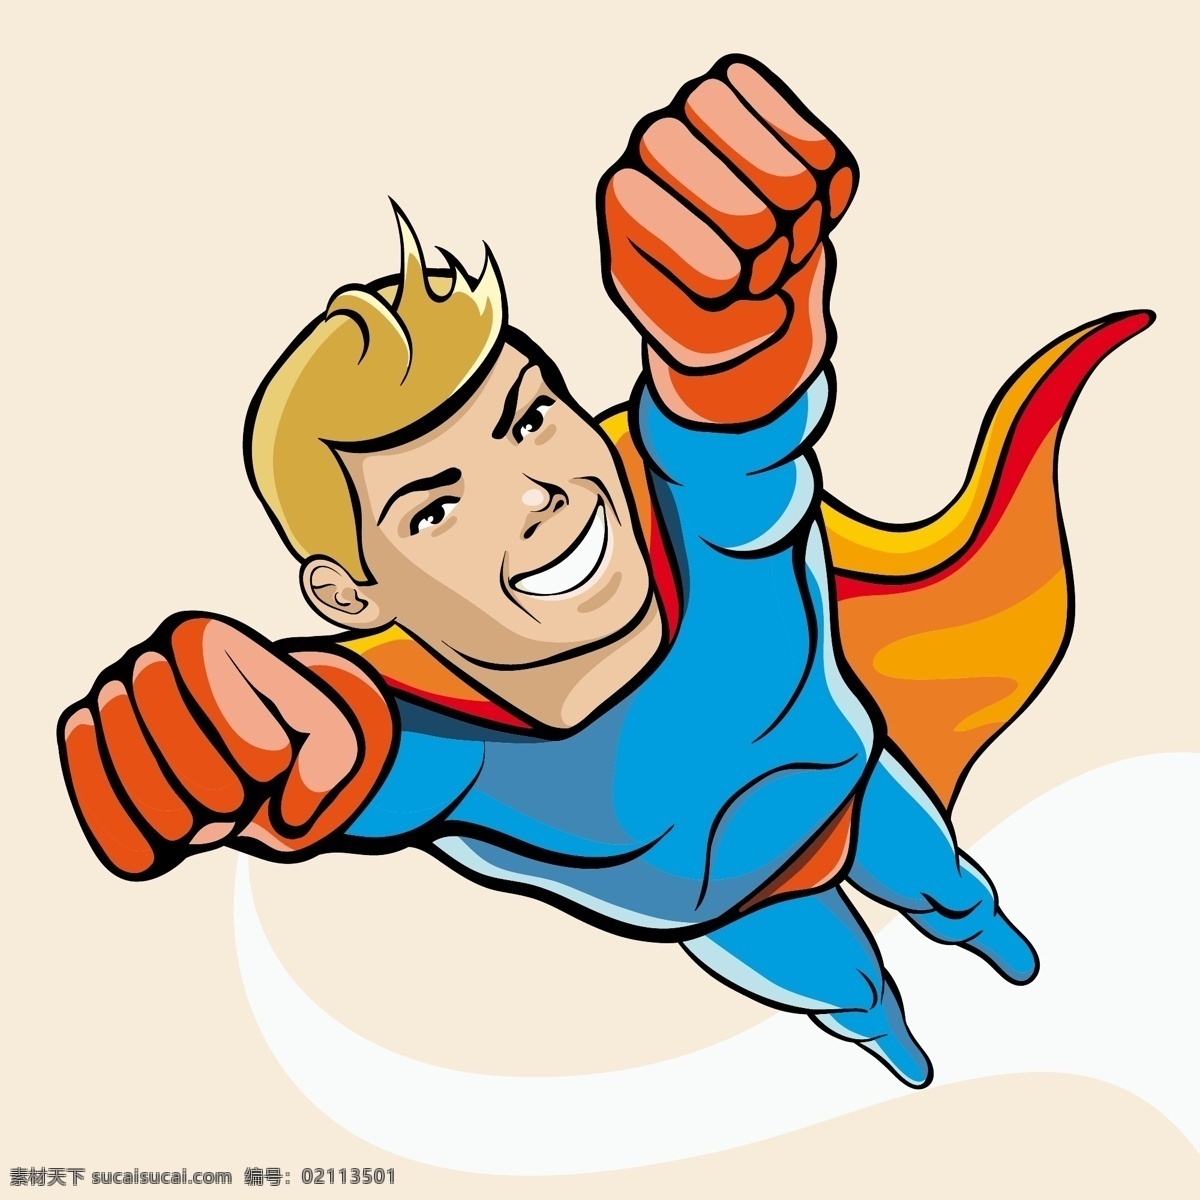 动漫超人 卡通超人 超级英雄 漫画超人 卡通漫画 卡通插画 插图 其他人物 矢量人物 矢量素材 ai格式 人物 人物图库 白色